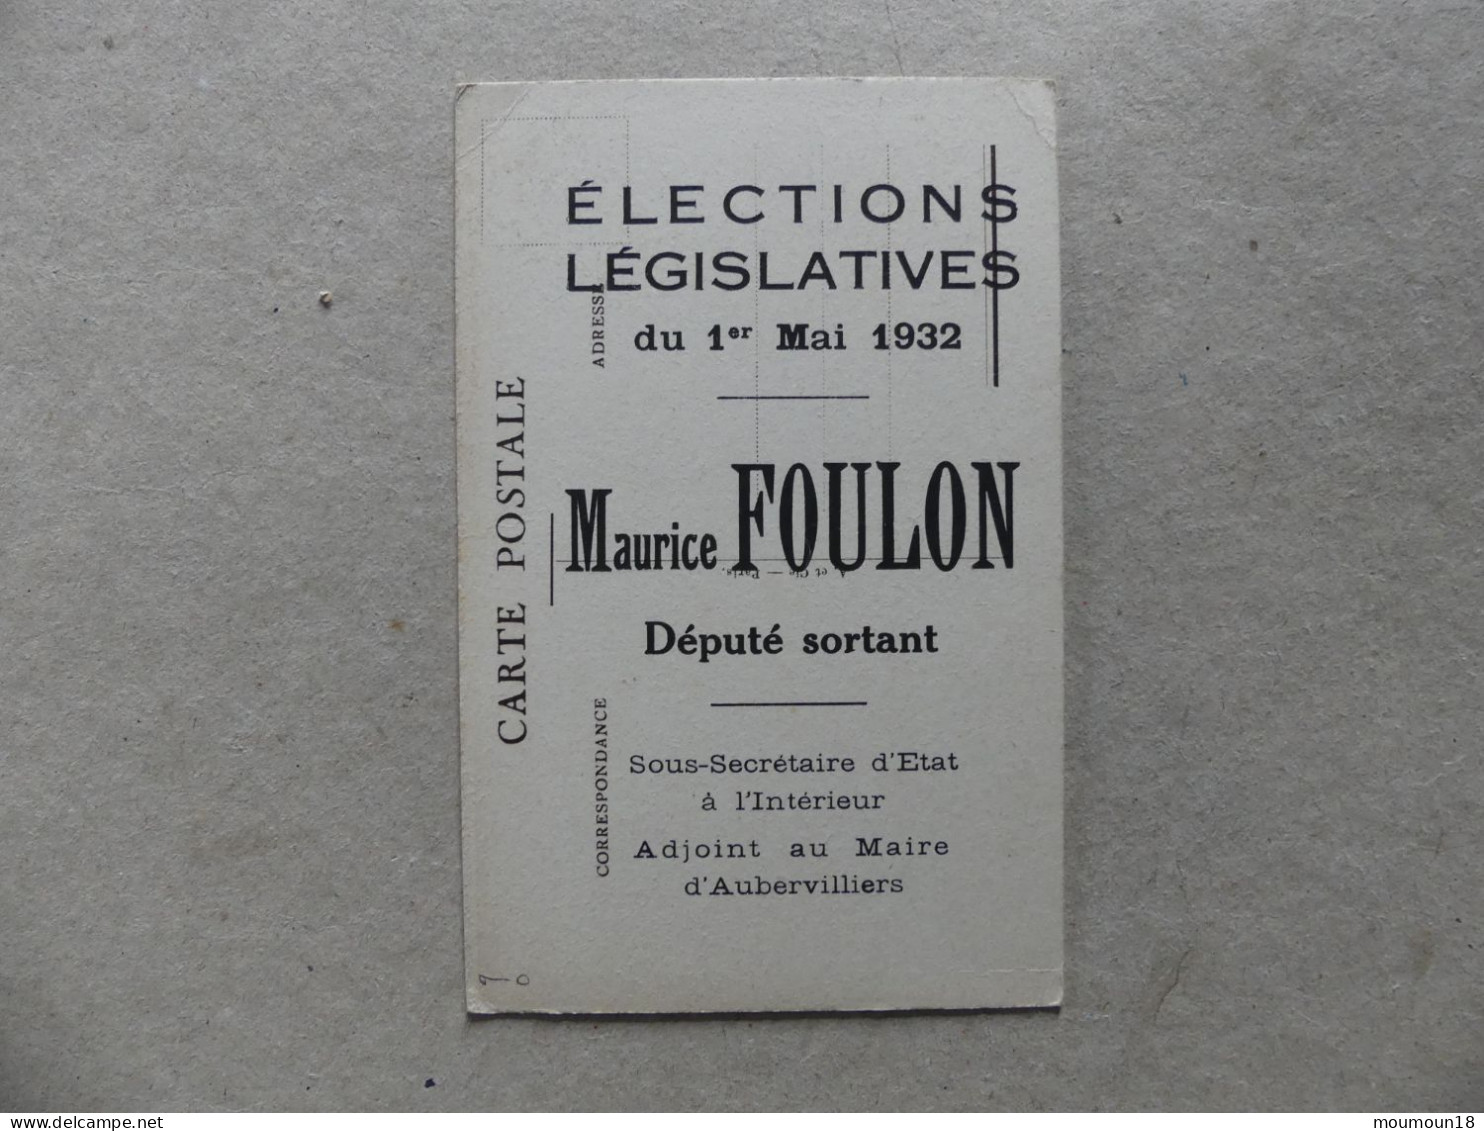 Maurice Foulon Elections Législatives 1932 Député Sortant Sous-Secrétaire D'Etat Intérieur Adjoint Maire Aubervilliers - Politieke En Militaire Mannen